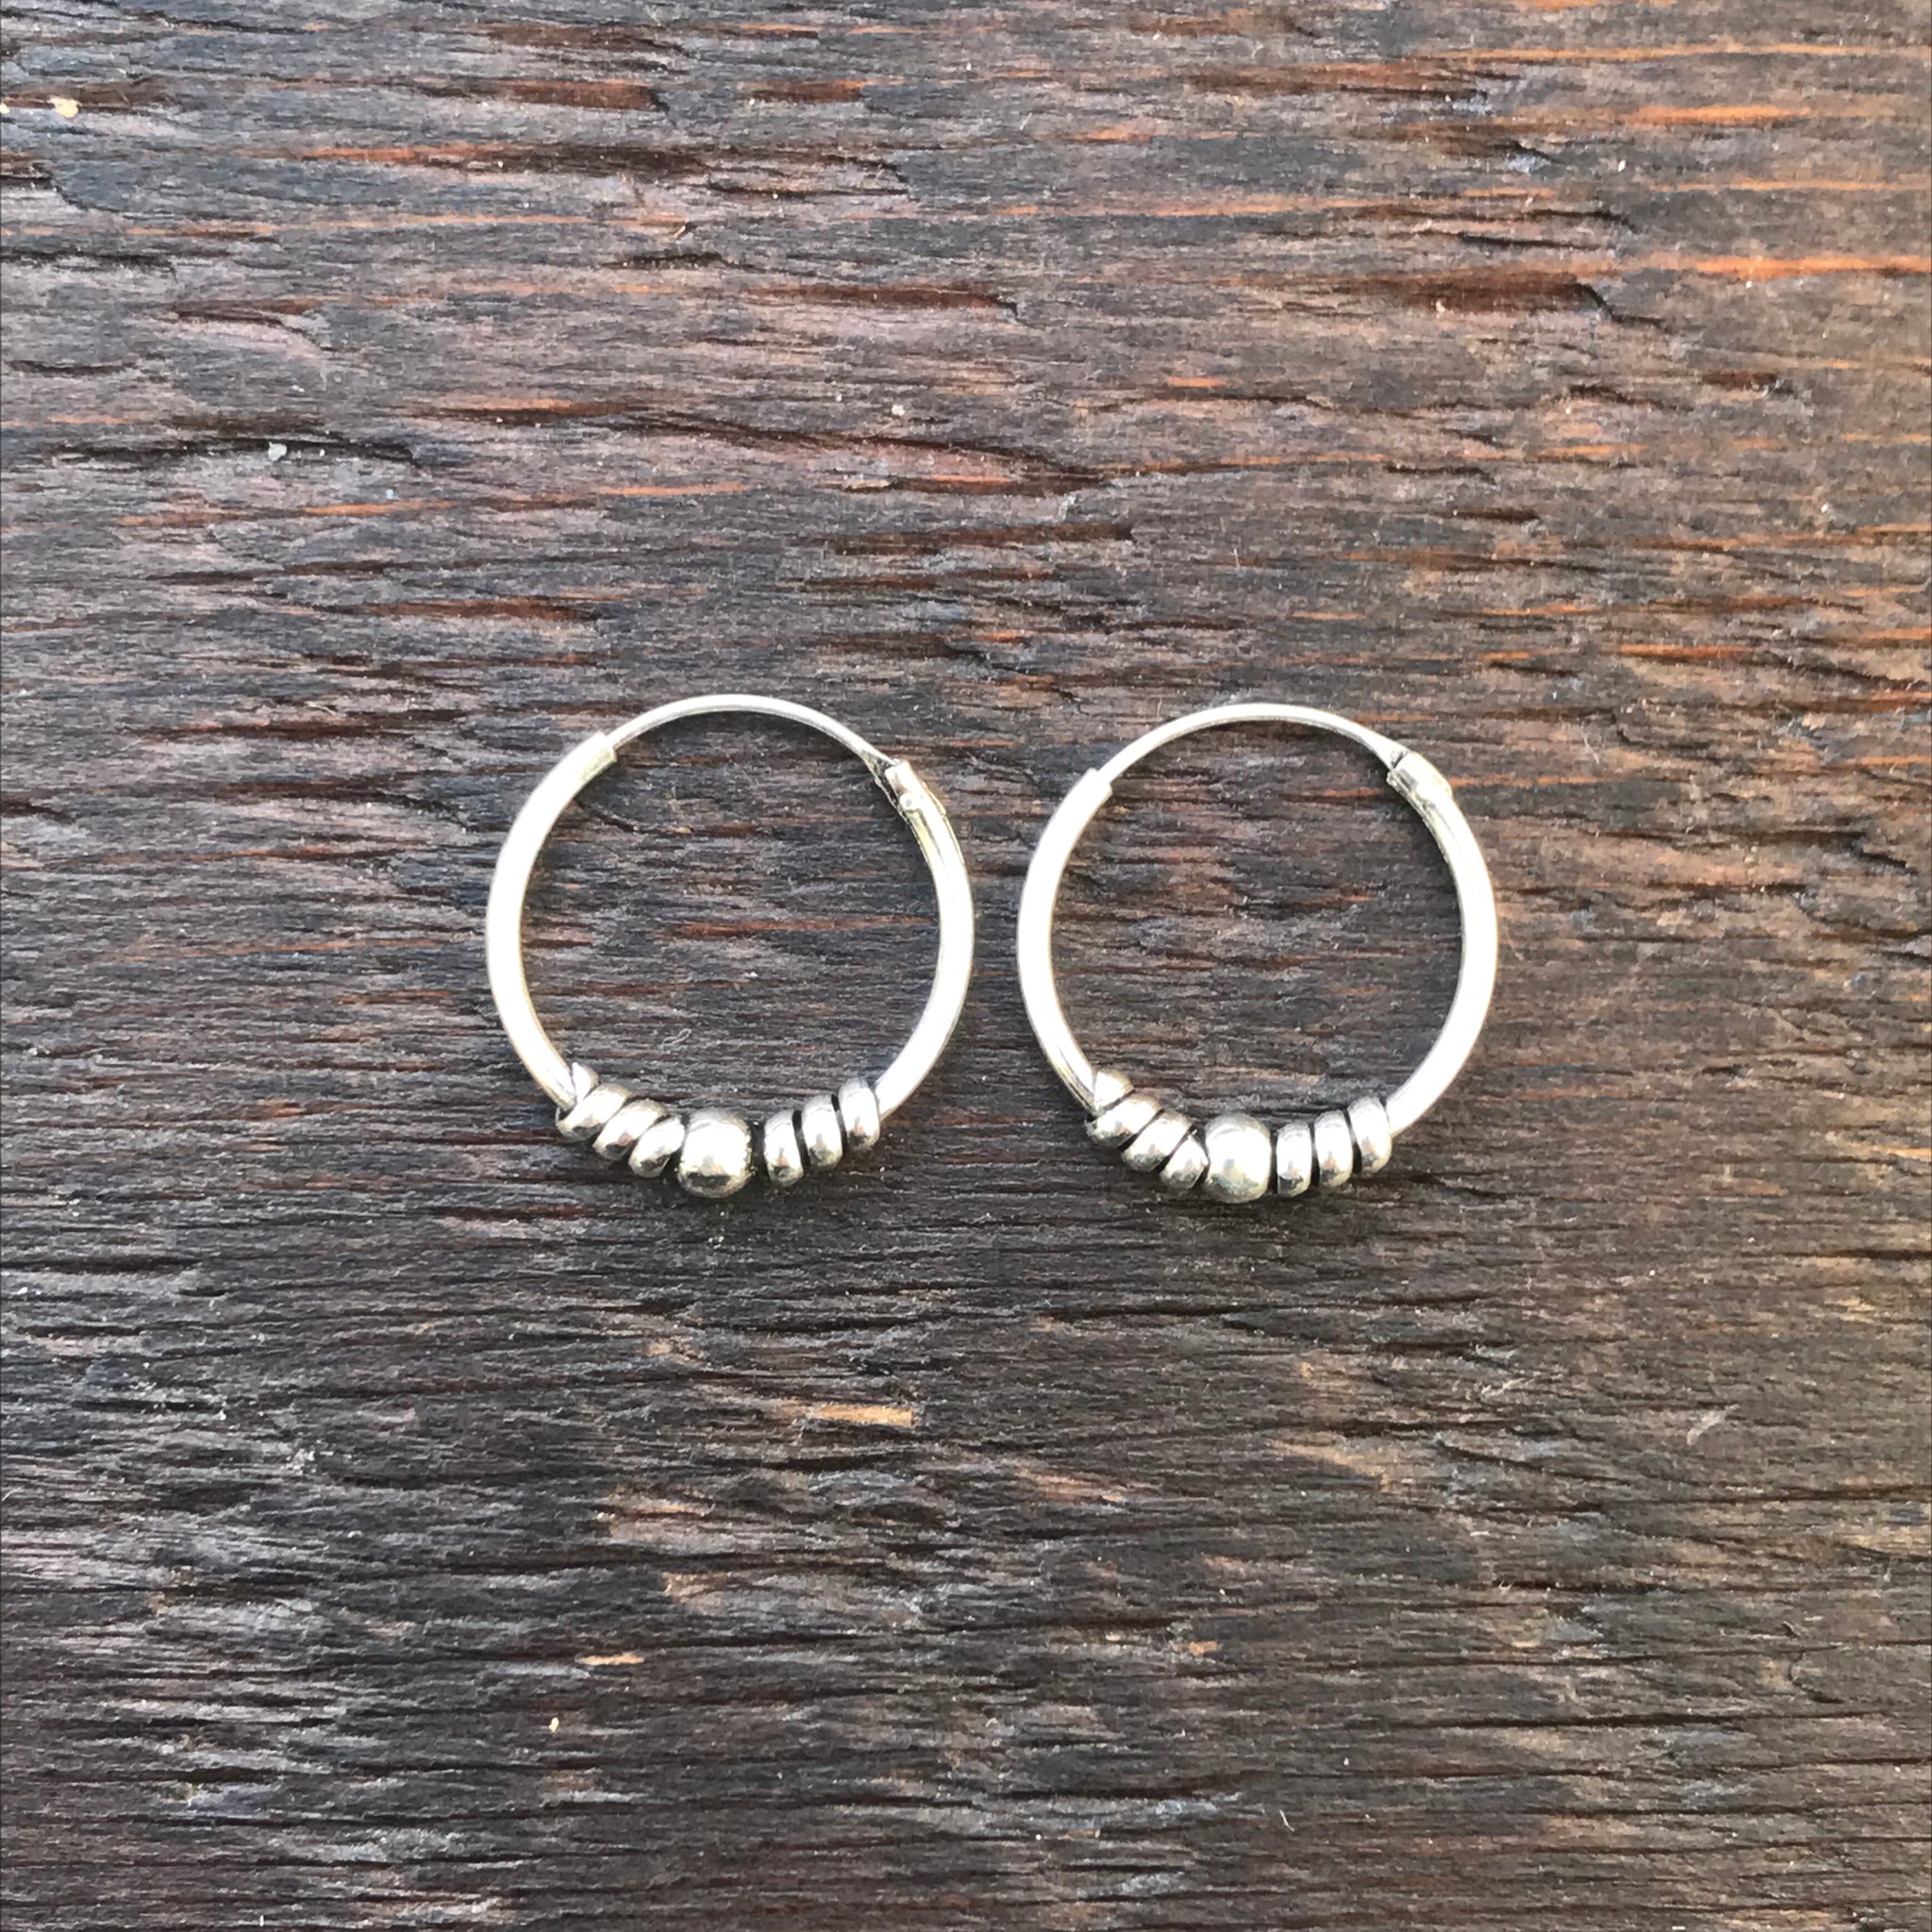 Sterling Silver Balinese Hoop Earrings